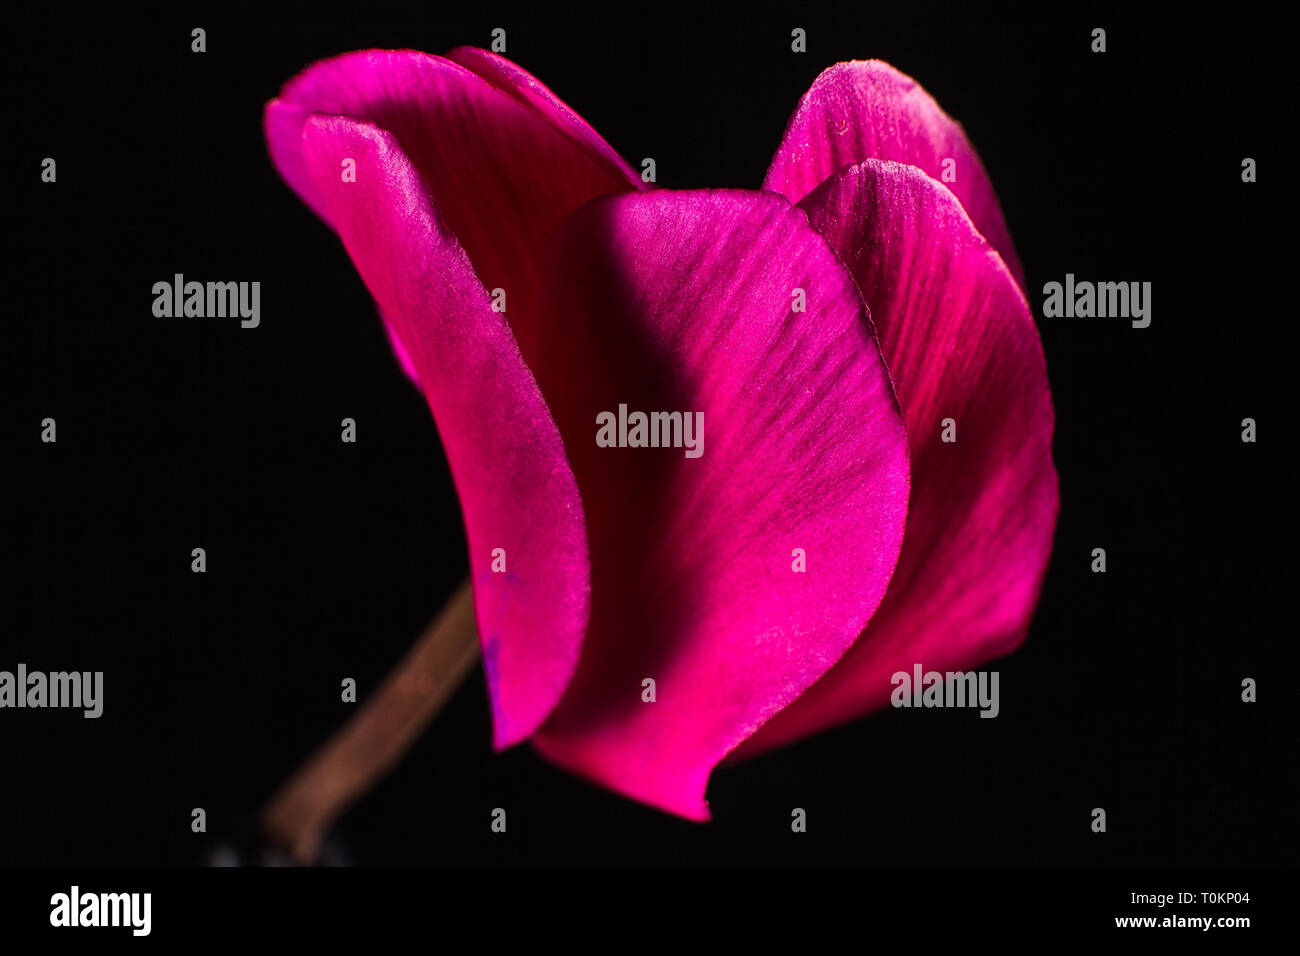 red cyclamen flower macro closeup detail Stock Photo